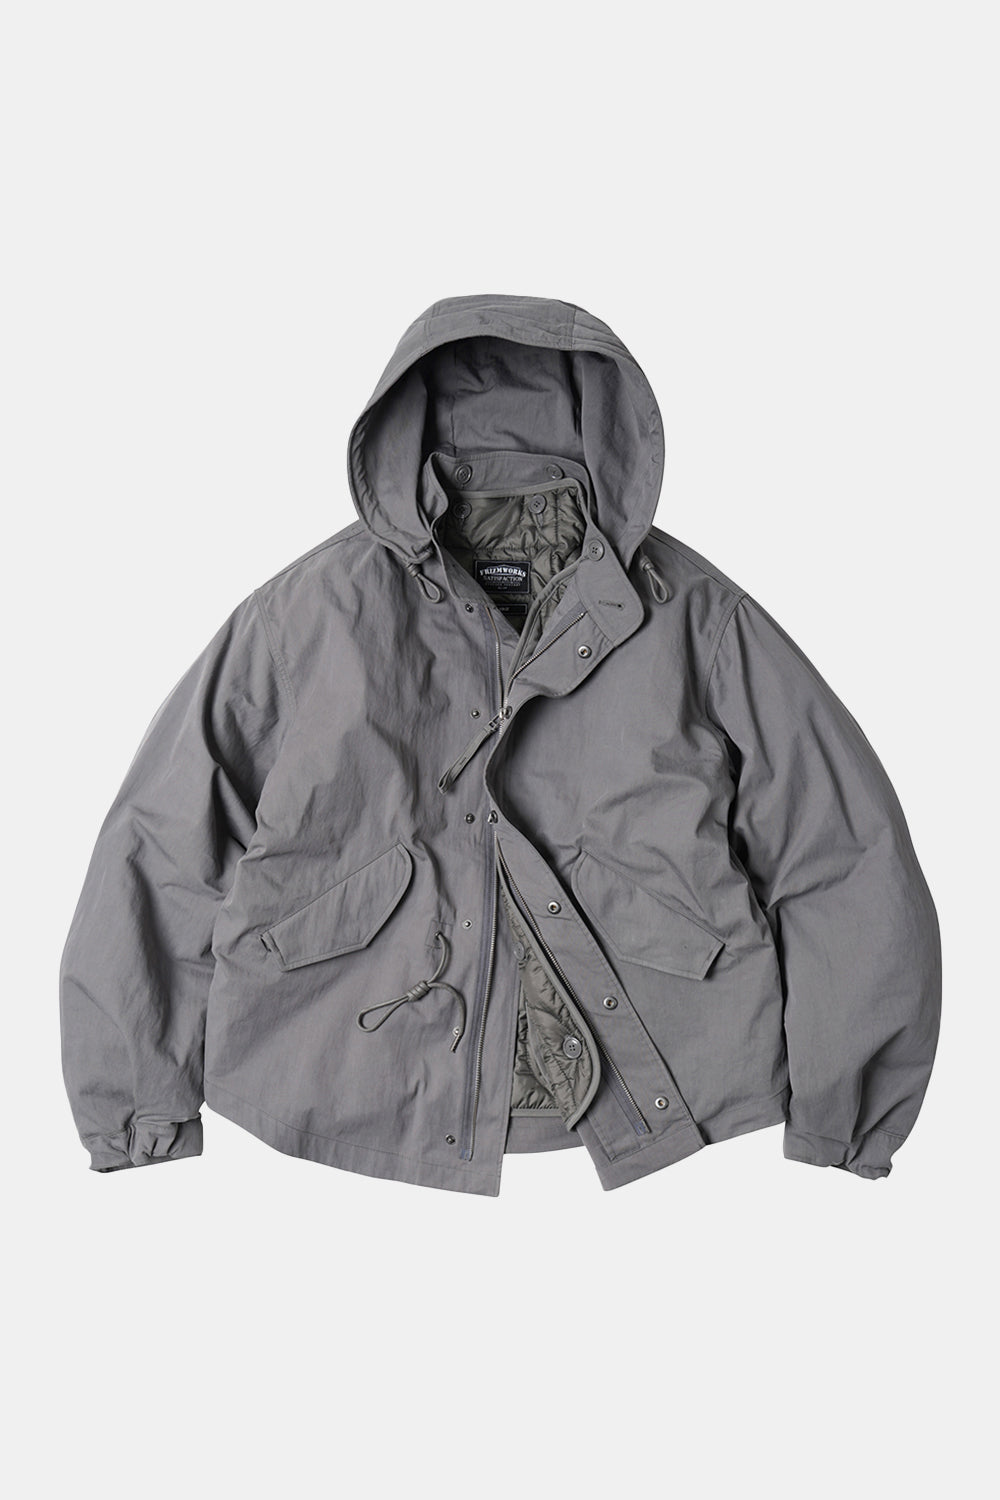 Frizmworks Oscar Fishtail 2 in 1 Jacket (Grey)